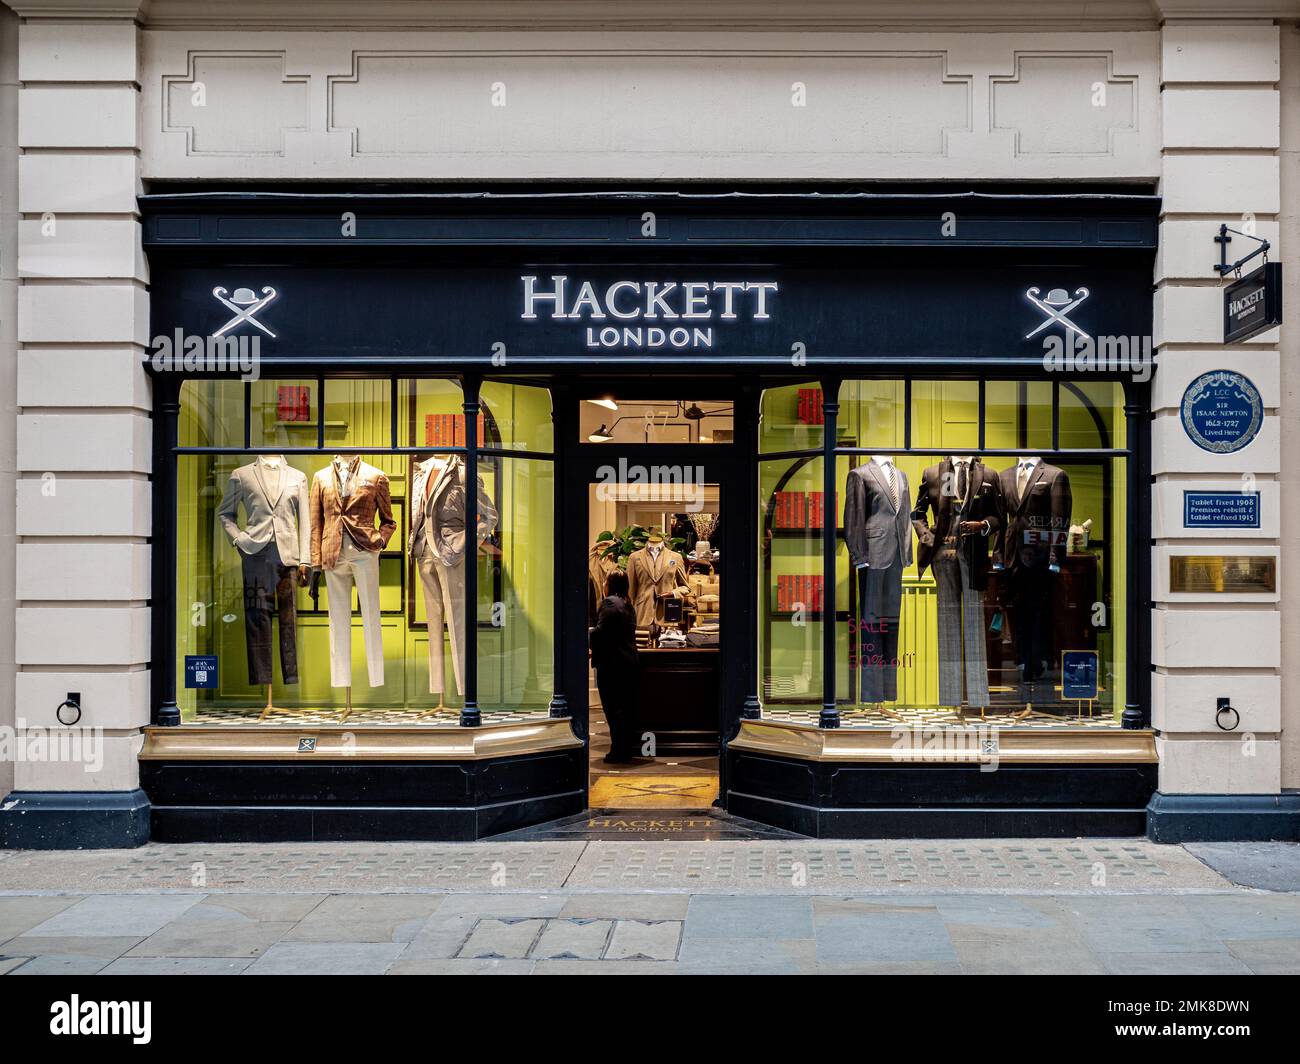 Hackett London Jermyn Street Mayfair London - Hackett Menswear Store at 87 Jermyn Street in central London. Hackett Gentlemens Outfitters London. Stock Photo